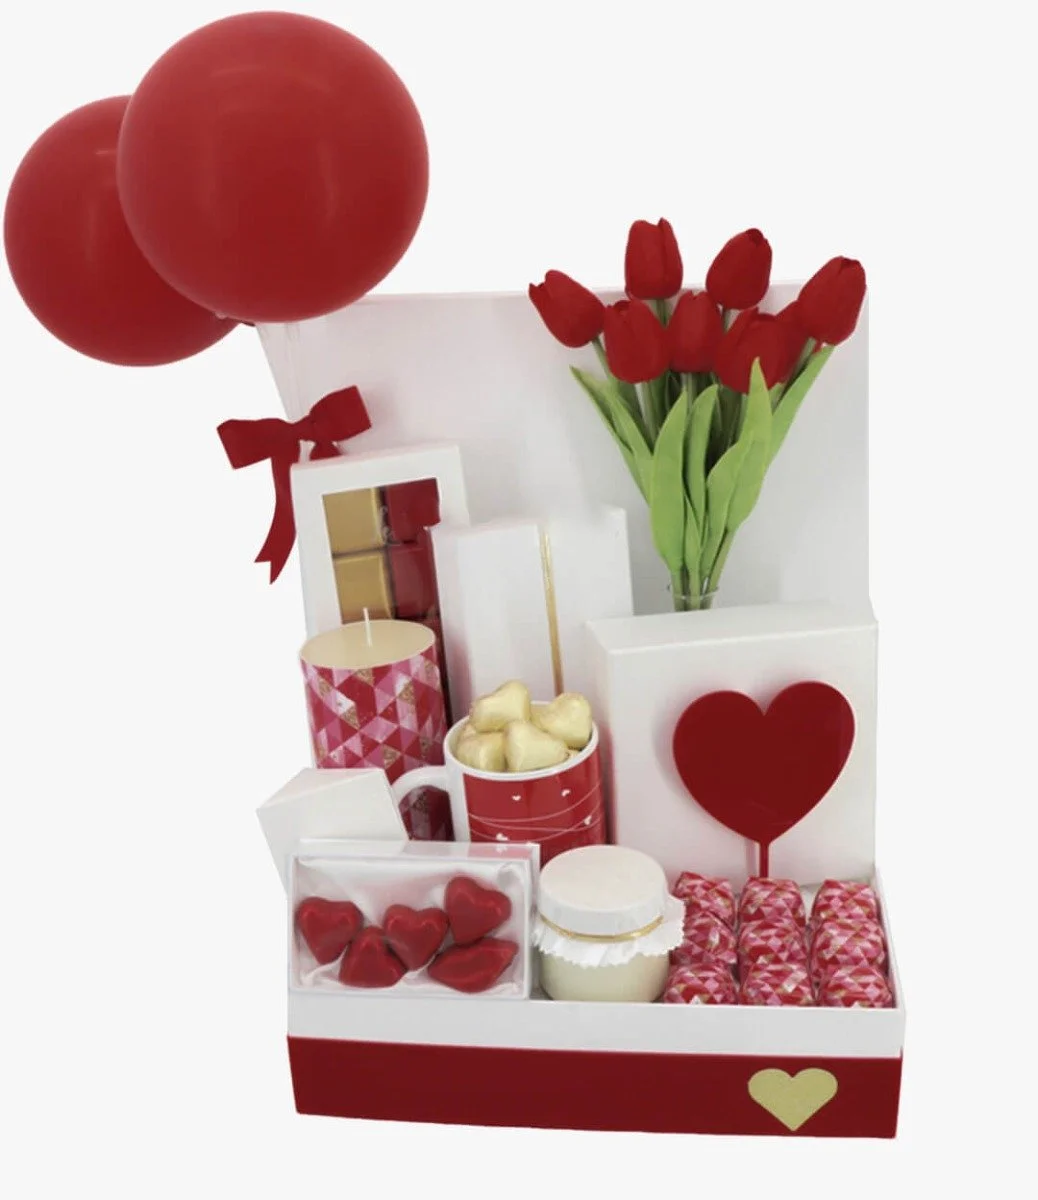 سلة عيد الحب الكبيرة الفاخرة بزهور الشوكولاتة الفاخرة من لو شوكوليتير دبي